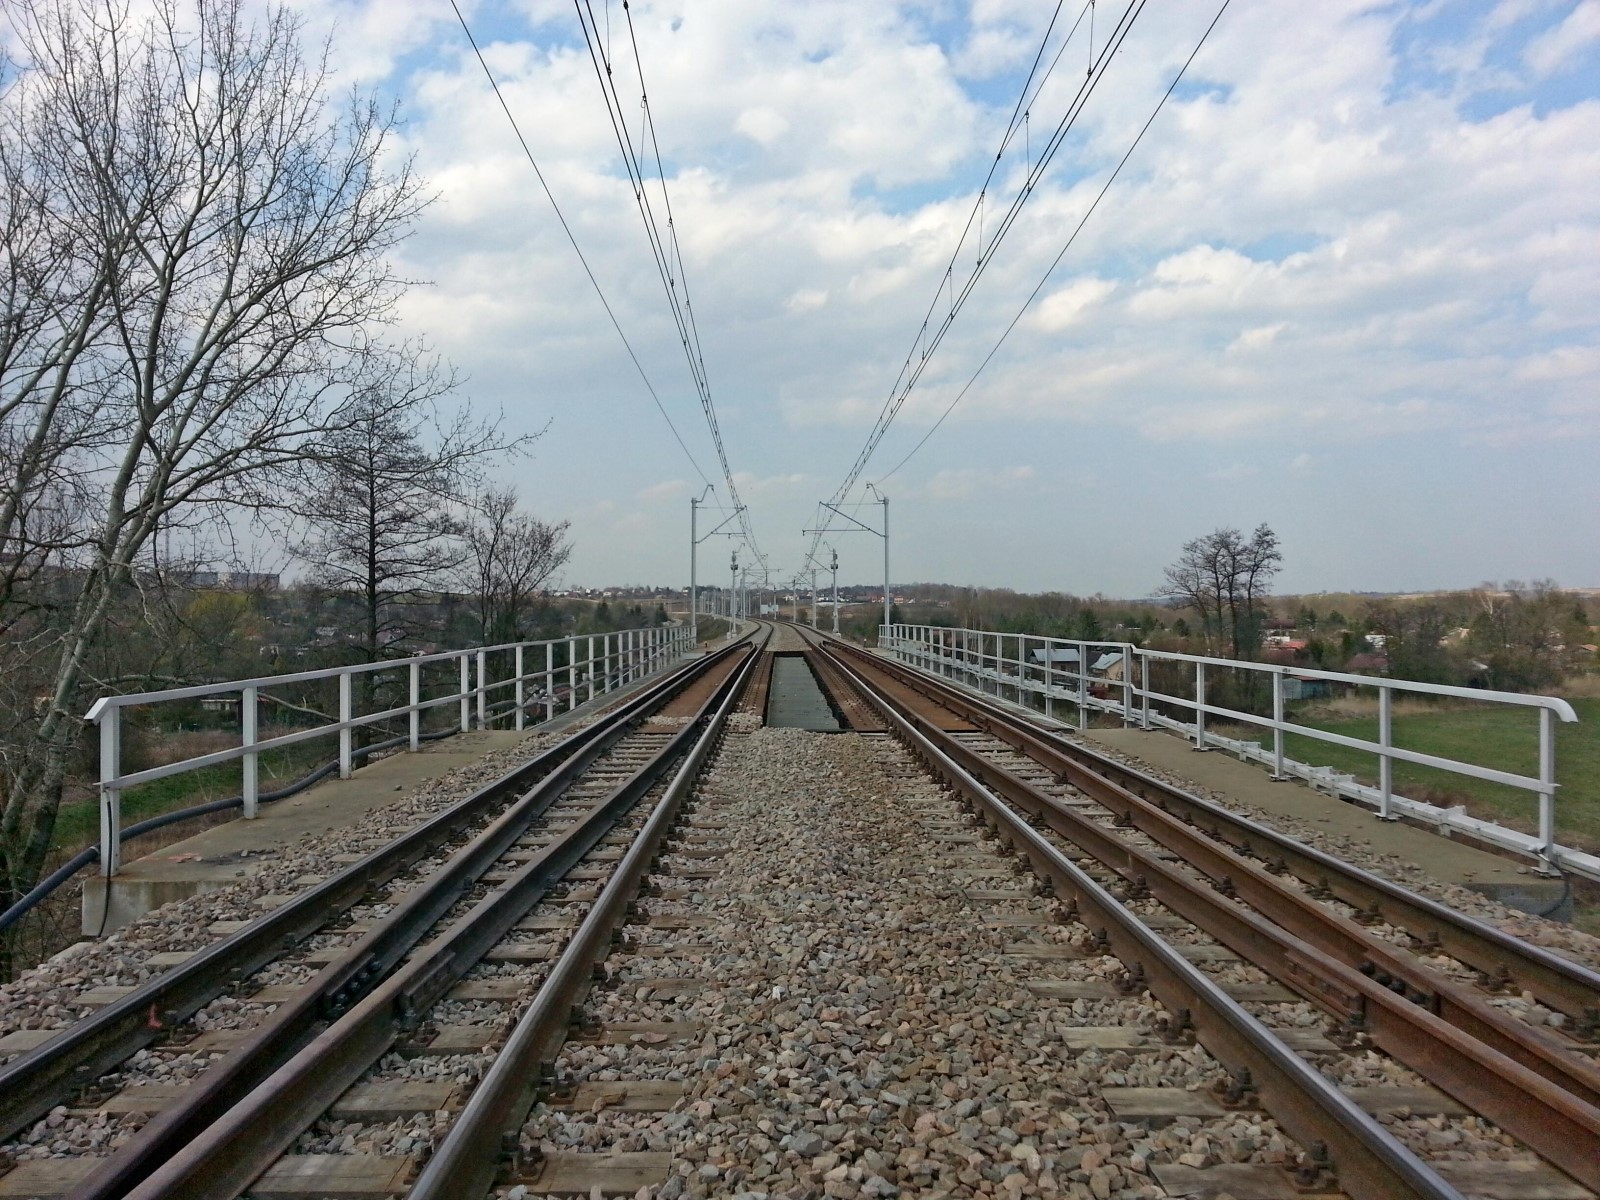 Prace budowlane na torze kolejowym, Kraków  - Jernbanearbejde